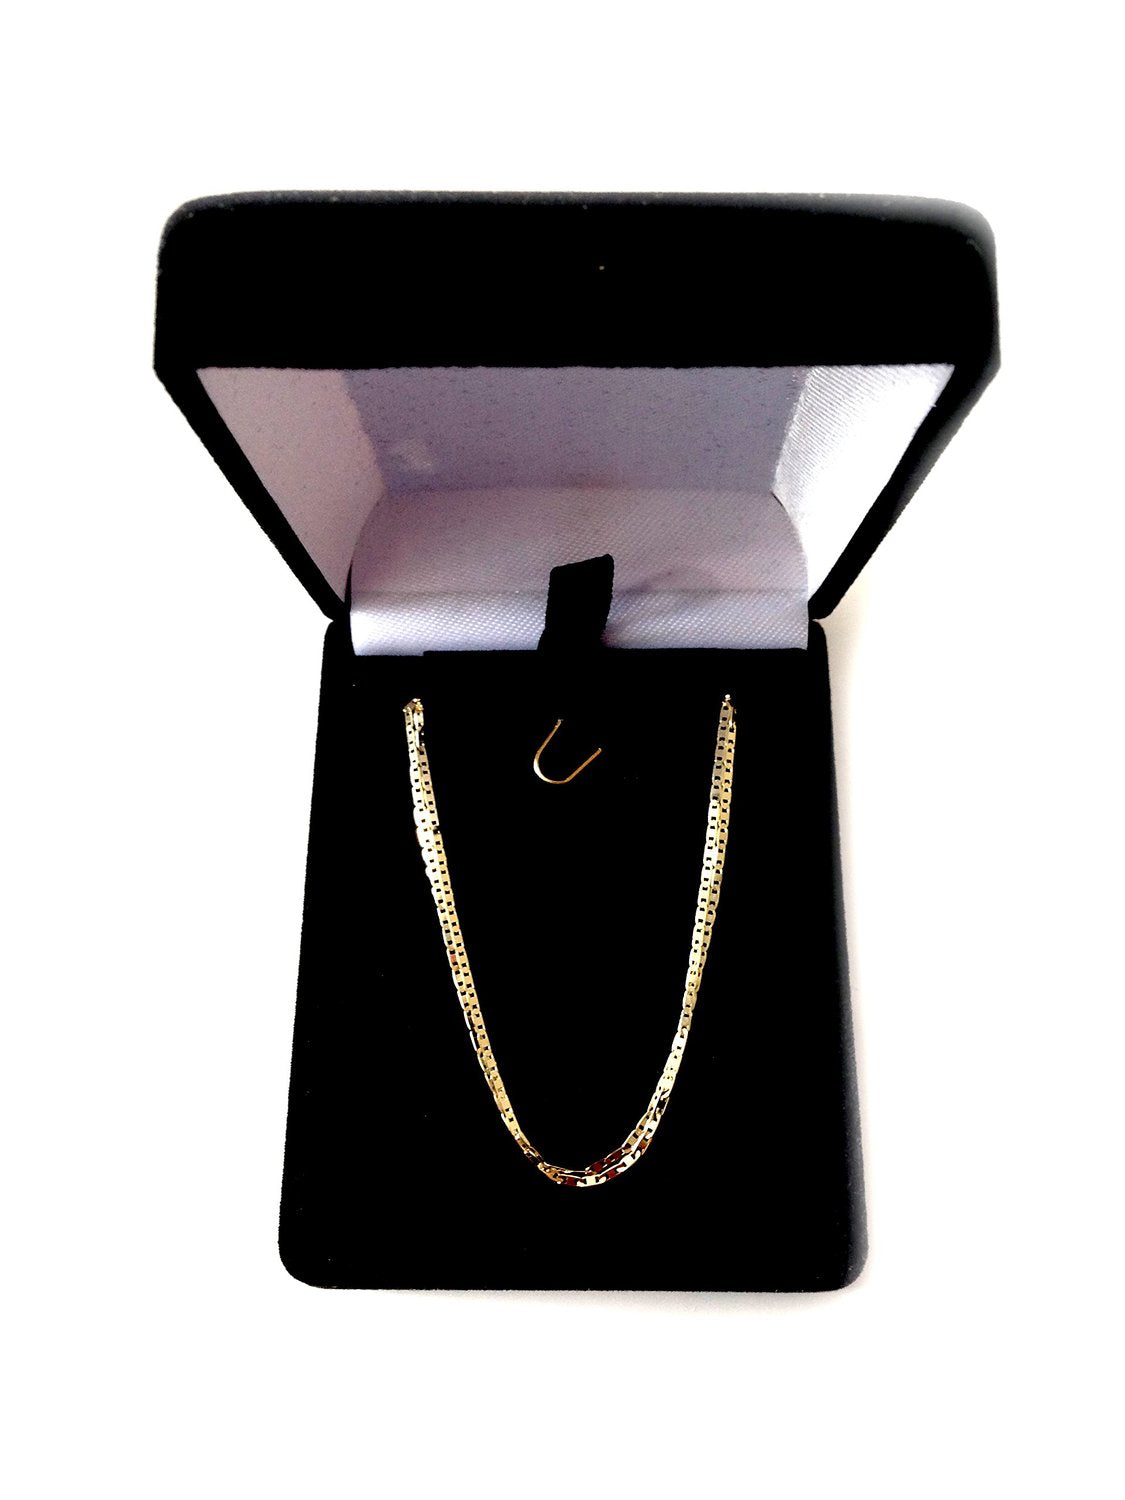 14k gult guld Mariner Link Chain Halsband, 1,2 mm fina designersmycken för män och kvinnor